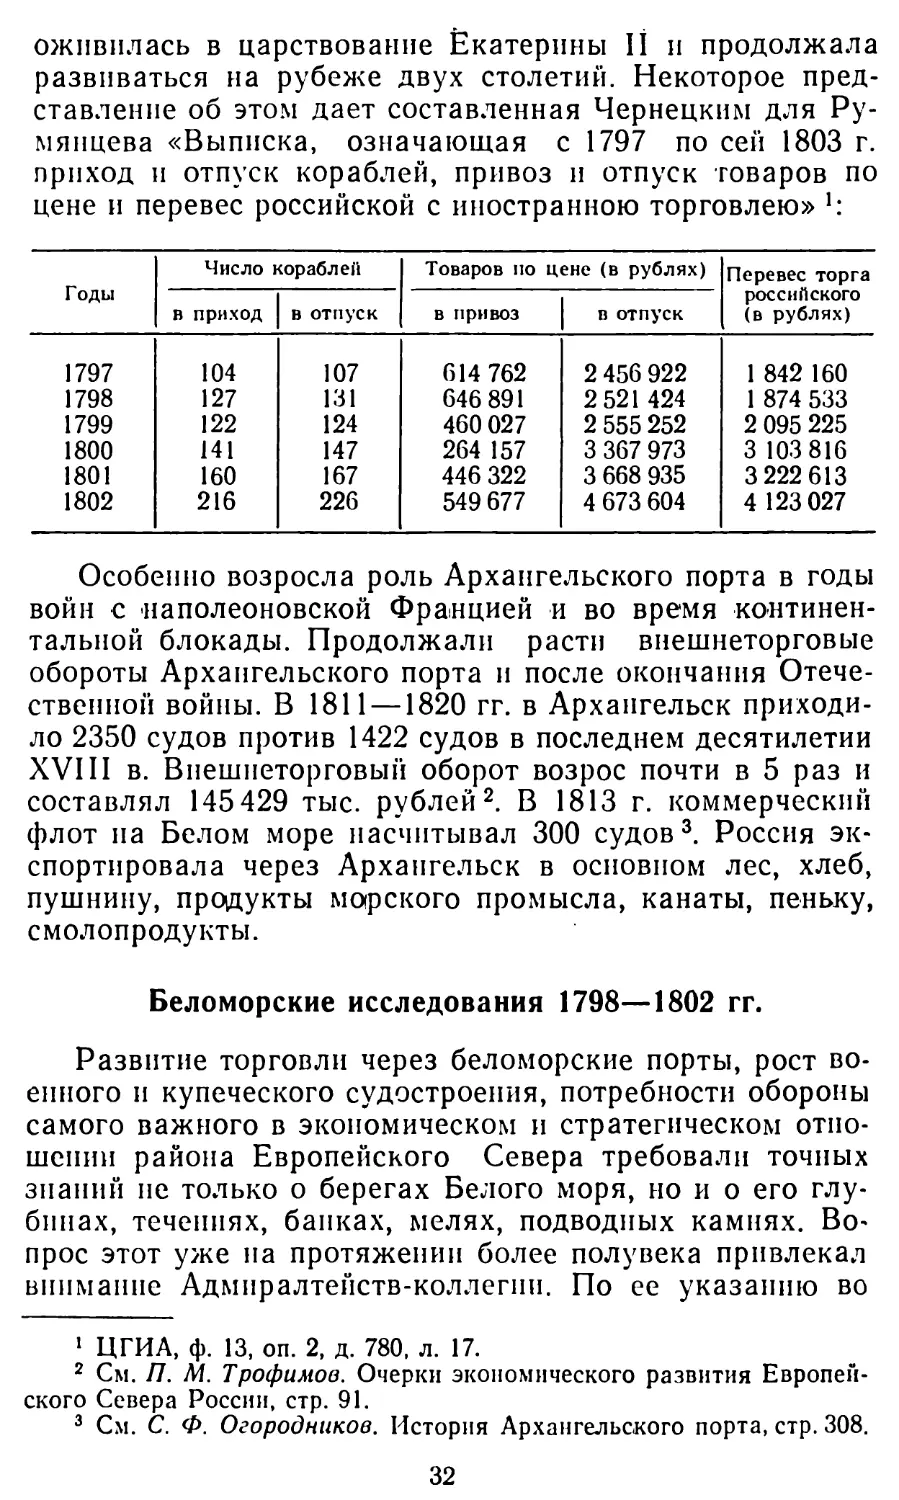 Беломорские исследования 1798—1802 гг